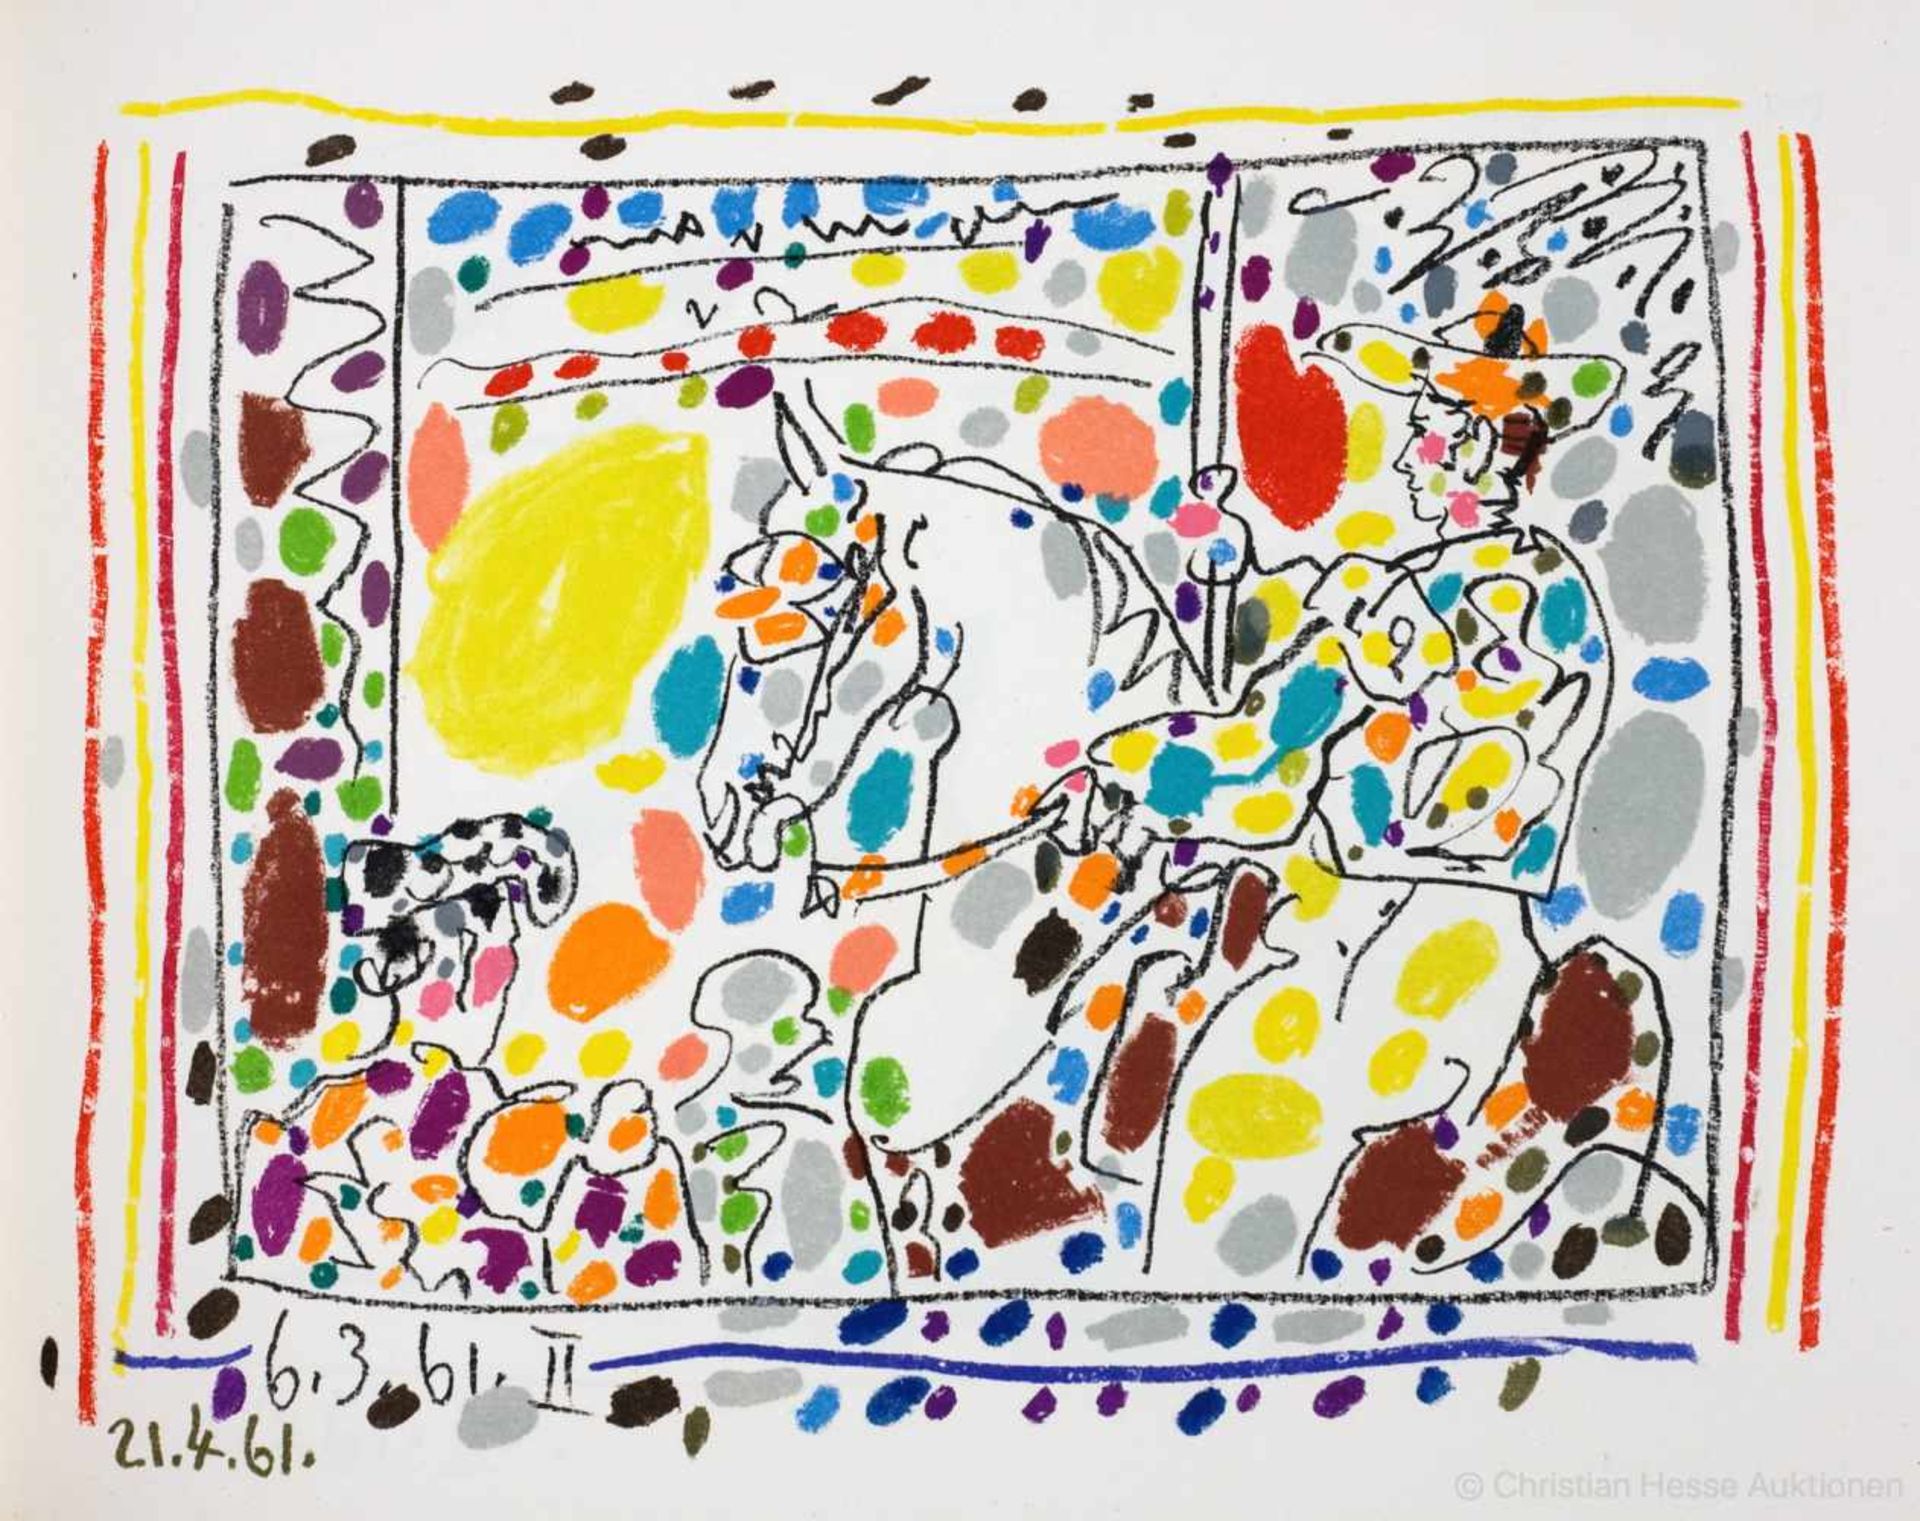 Pablo Picasso - Jaime Sabartés. »A los toros« mit Picasso. Monte-Carlo, André Sauret 1961. Mit